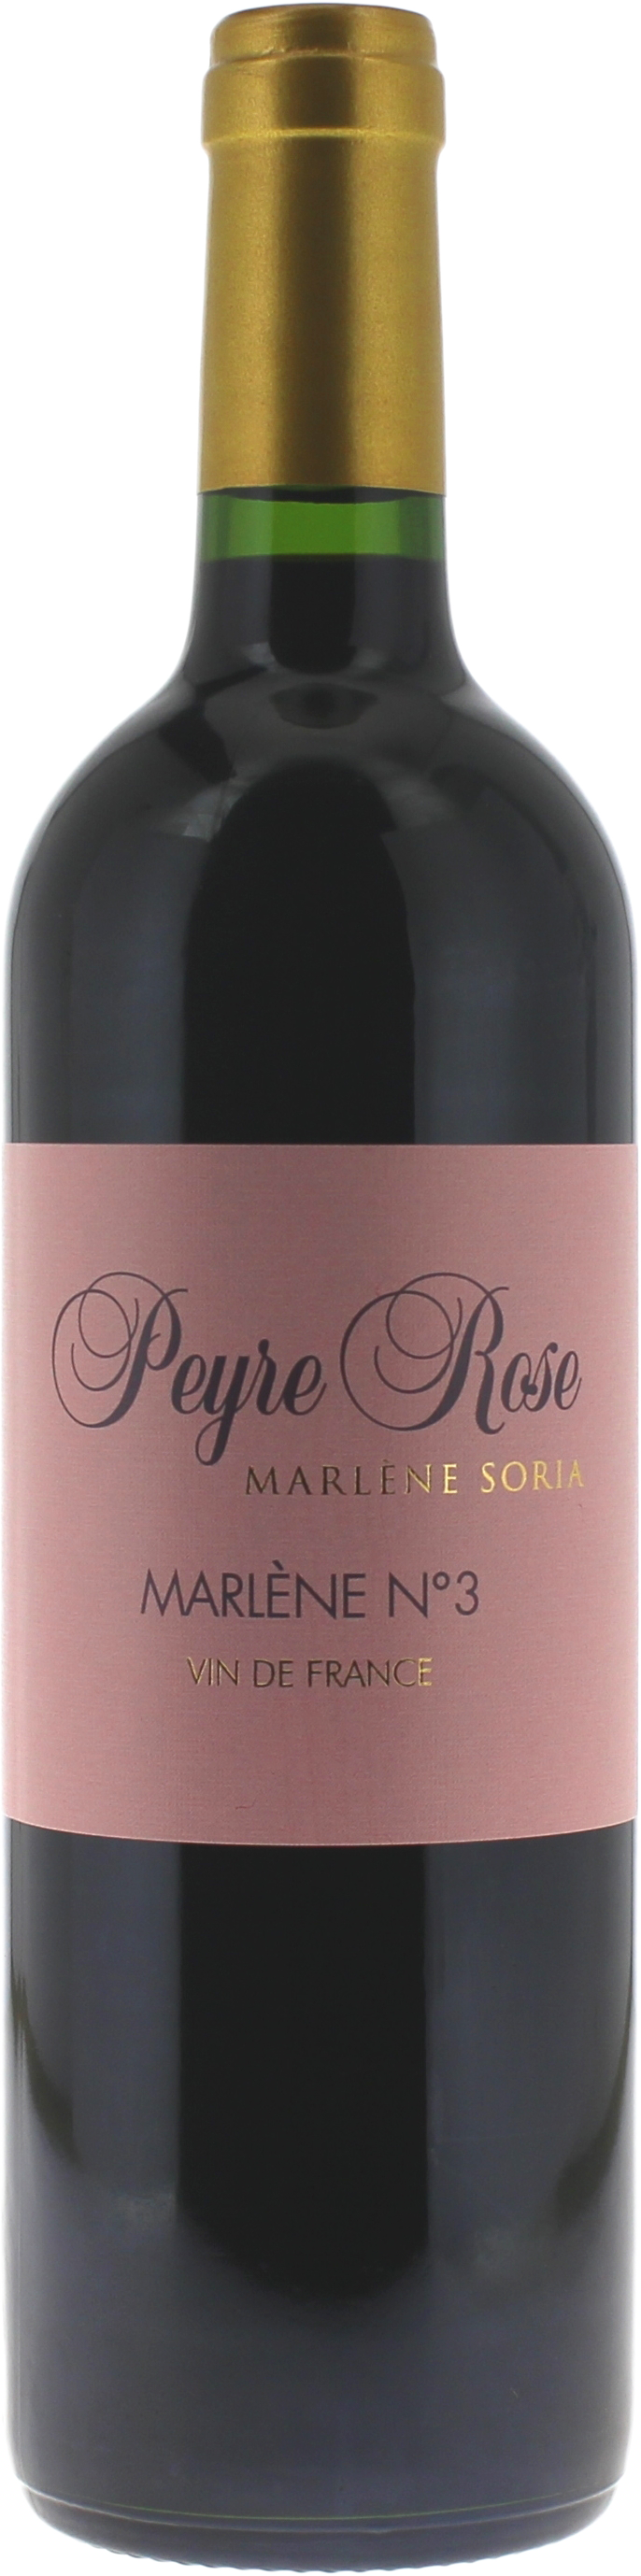 Peyre rose marlene n3 2014  Vins de France, Languedoc